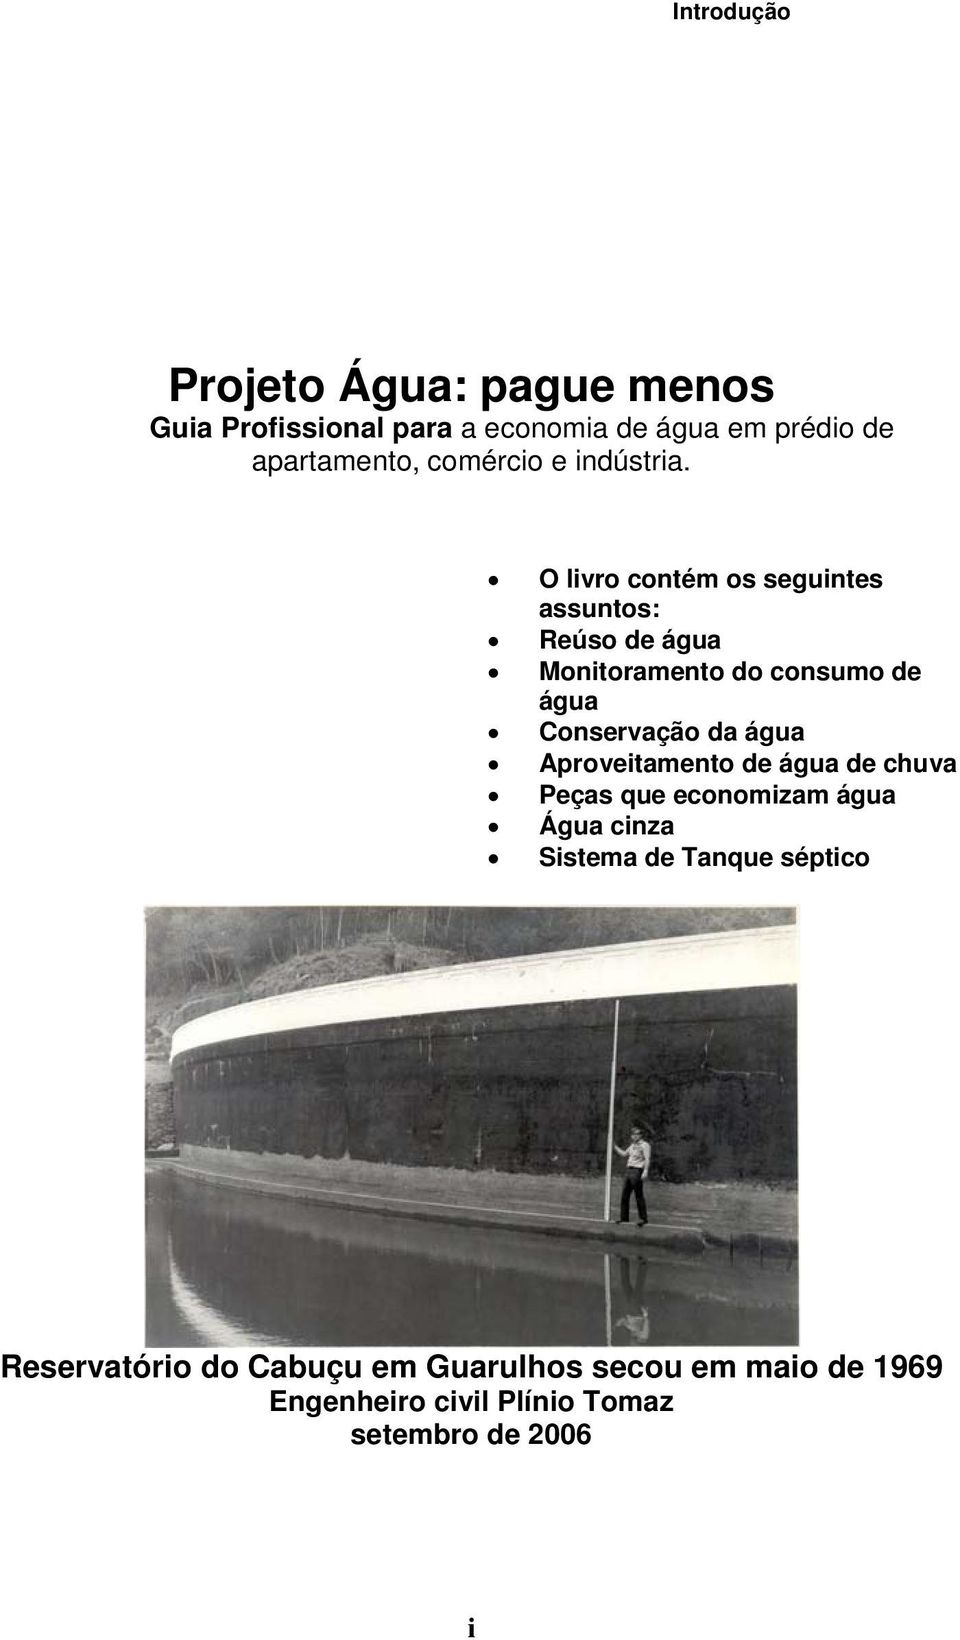 O livro contém os seguintes assuntos: Reúso de água Monitoramento do consumo de água Conservação da água